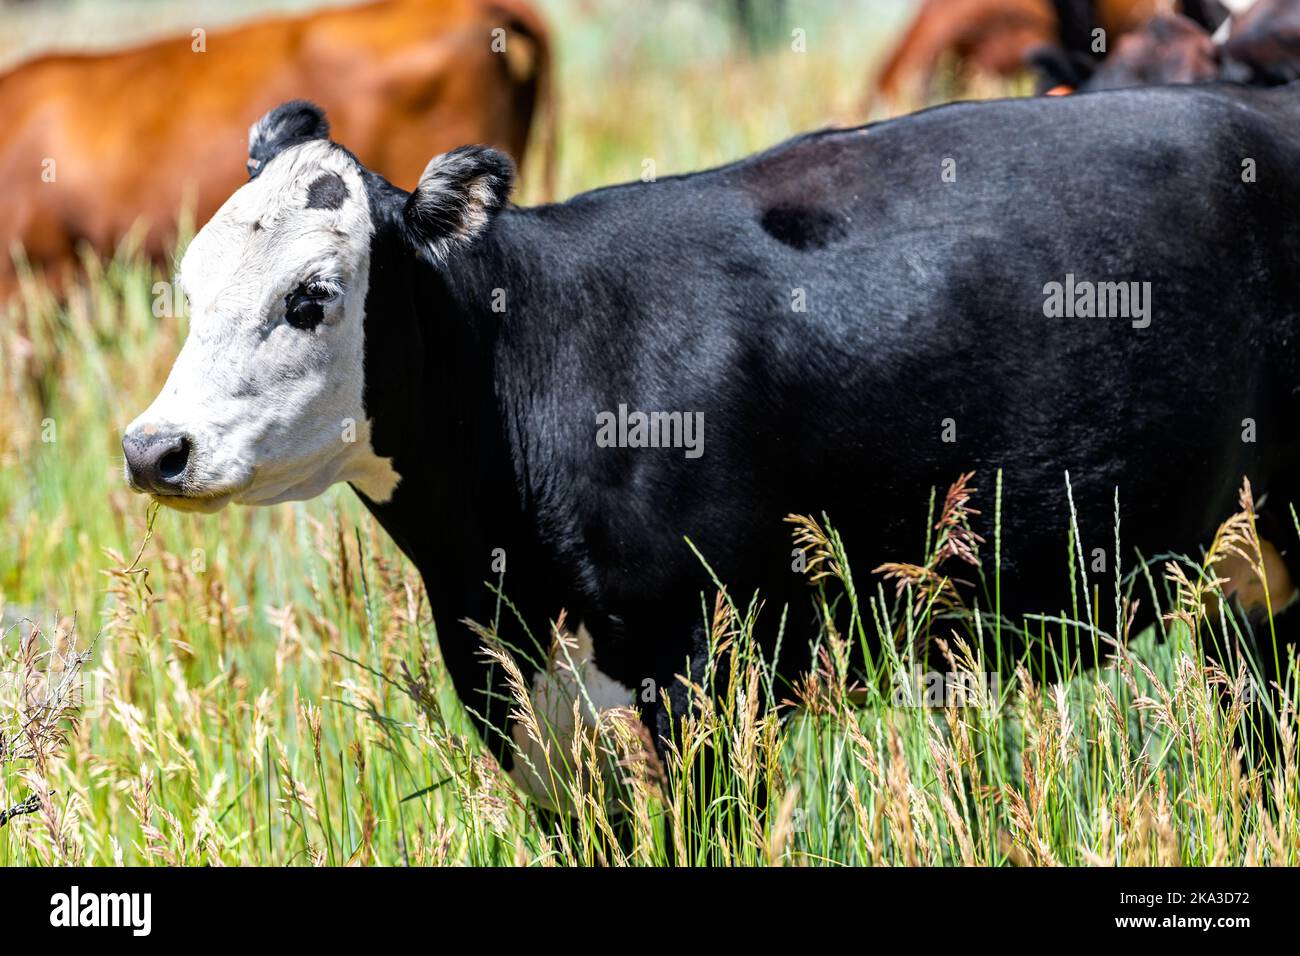 Flaming Gorge parque en verano soleado en Utah con muchas vacas pastando de cerca en manada de pasto cerca del rancho con vaca angus blanca y negra Foto de stock